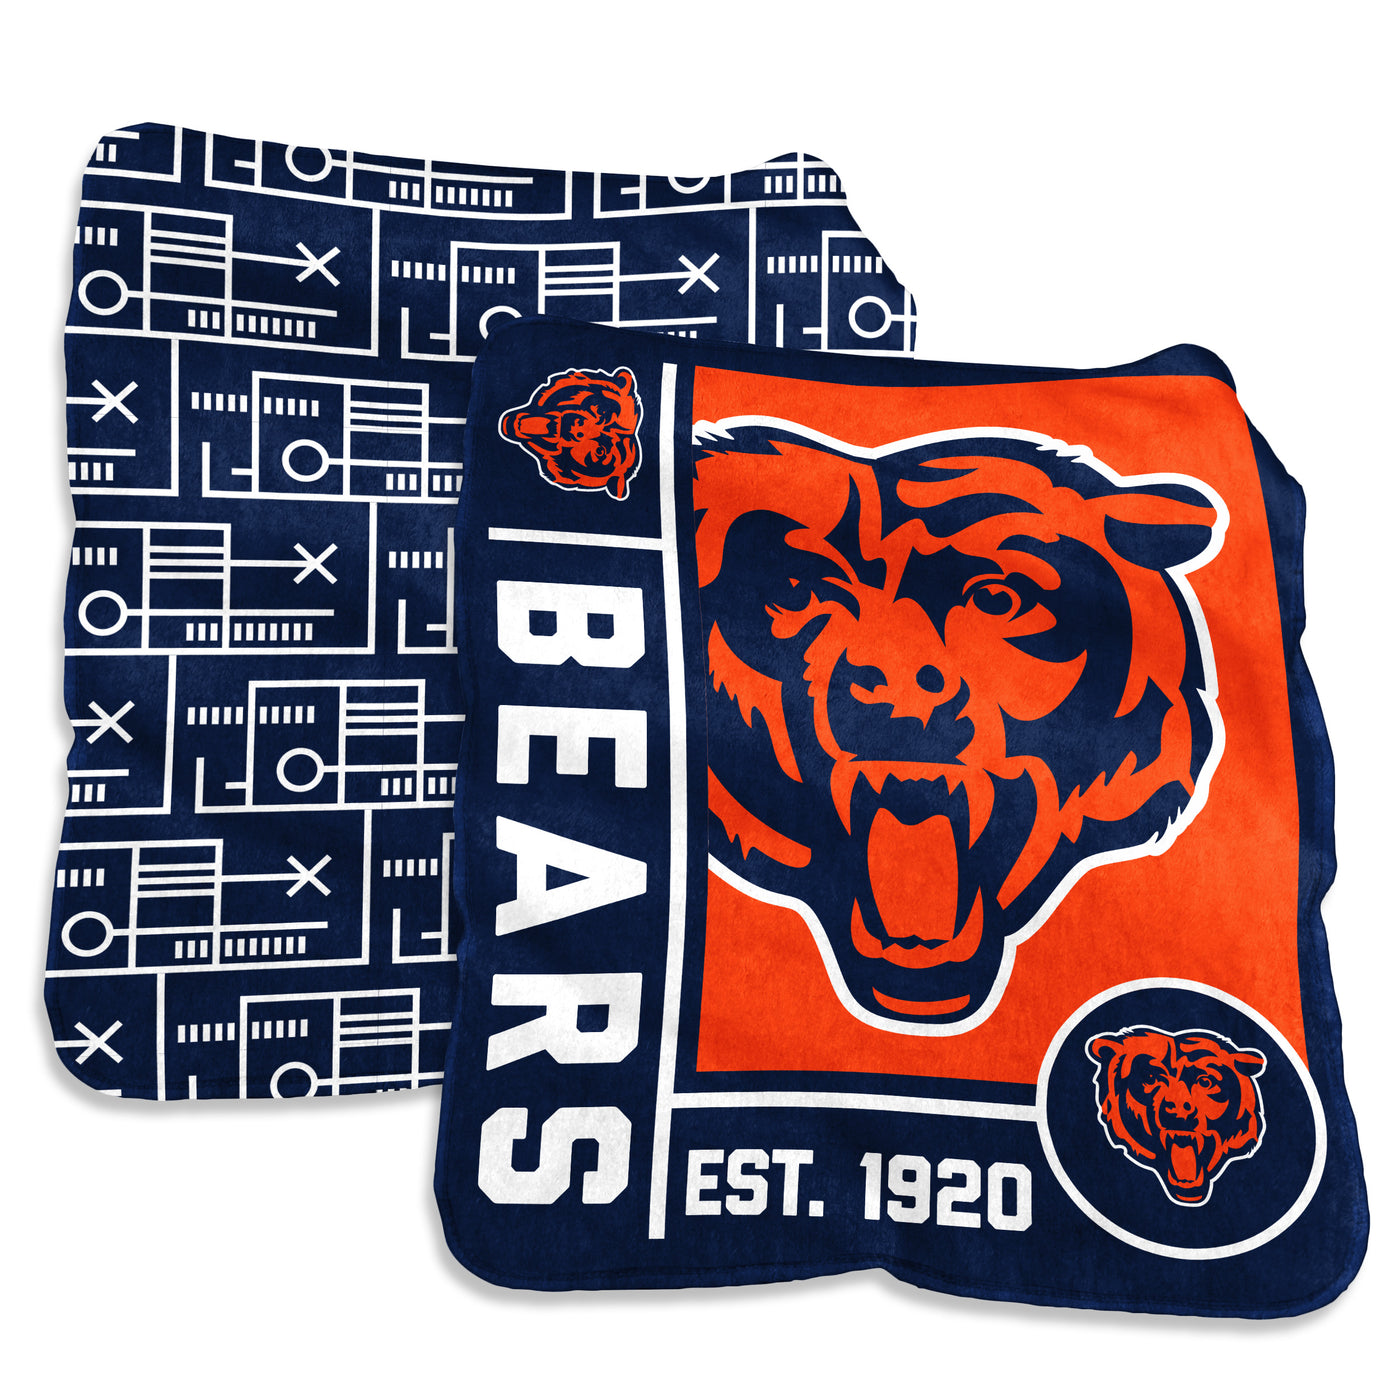 Chicago Bears 60x70 Super Plush Blanket